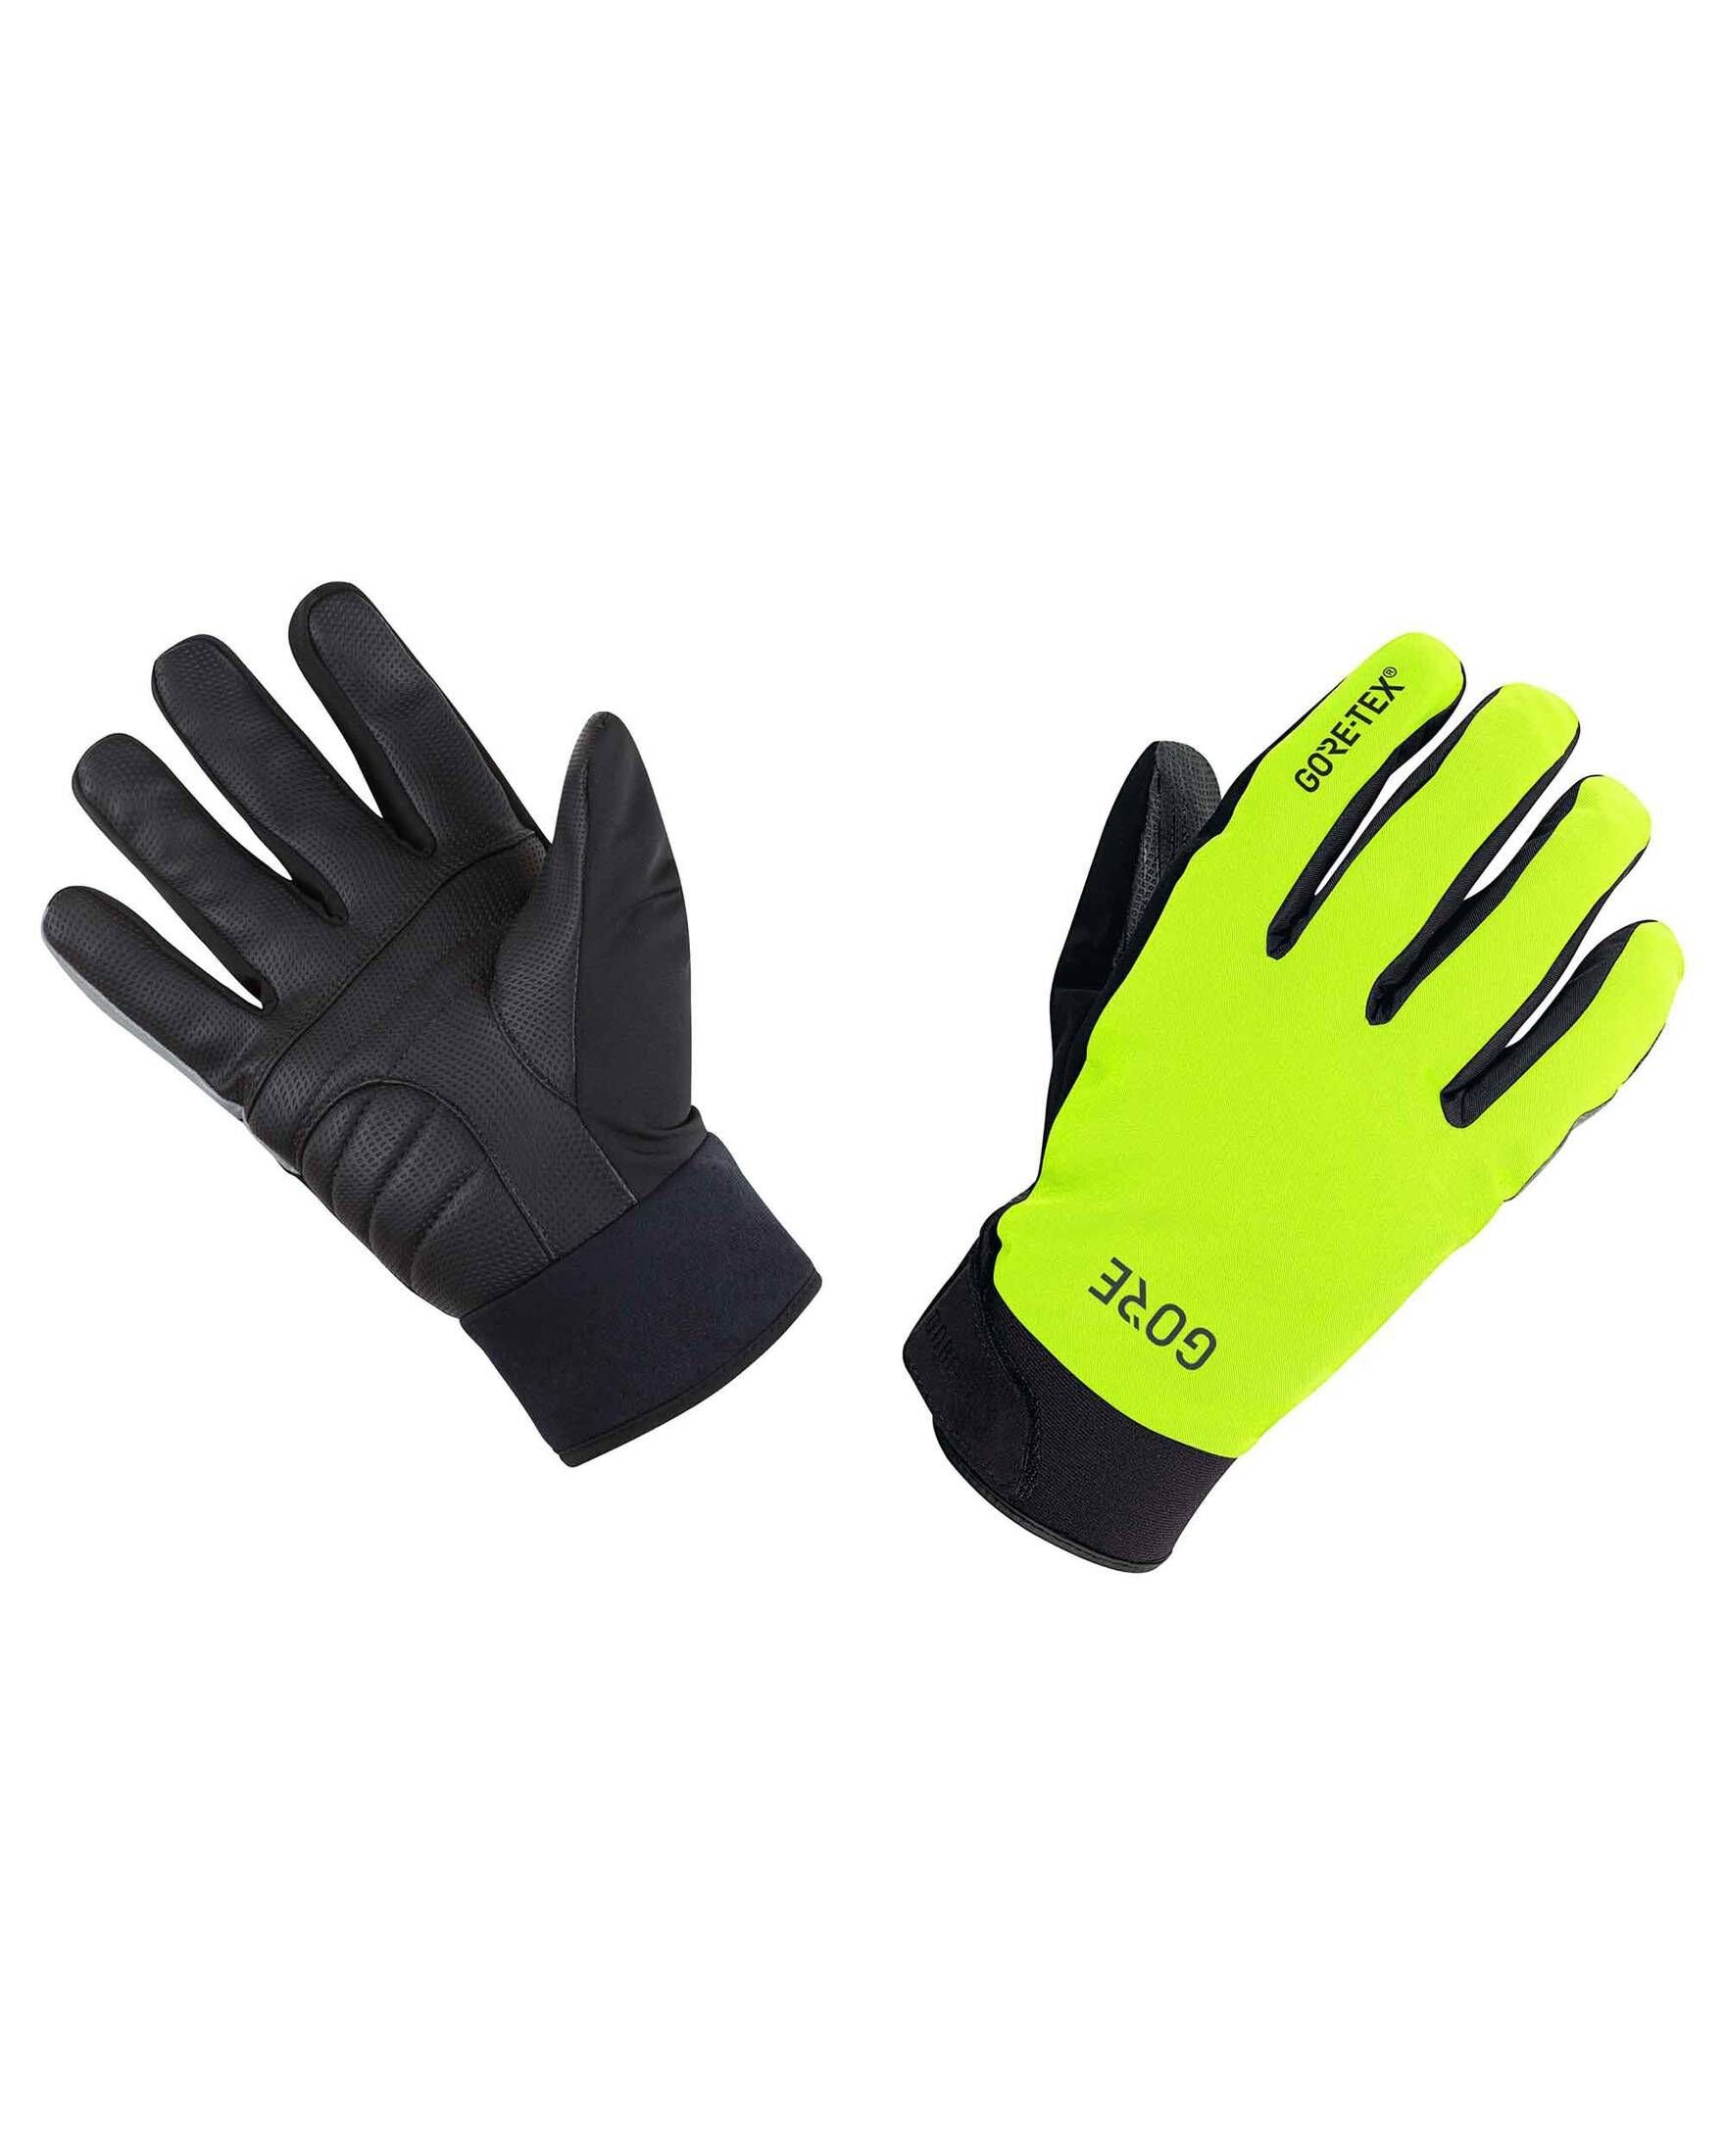 GORE® Wear GORE-TEX Thermo schwarz/gelb (703) Handschuhe C5 GLOVES Fahrradhandschuhe Herren